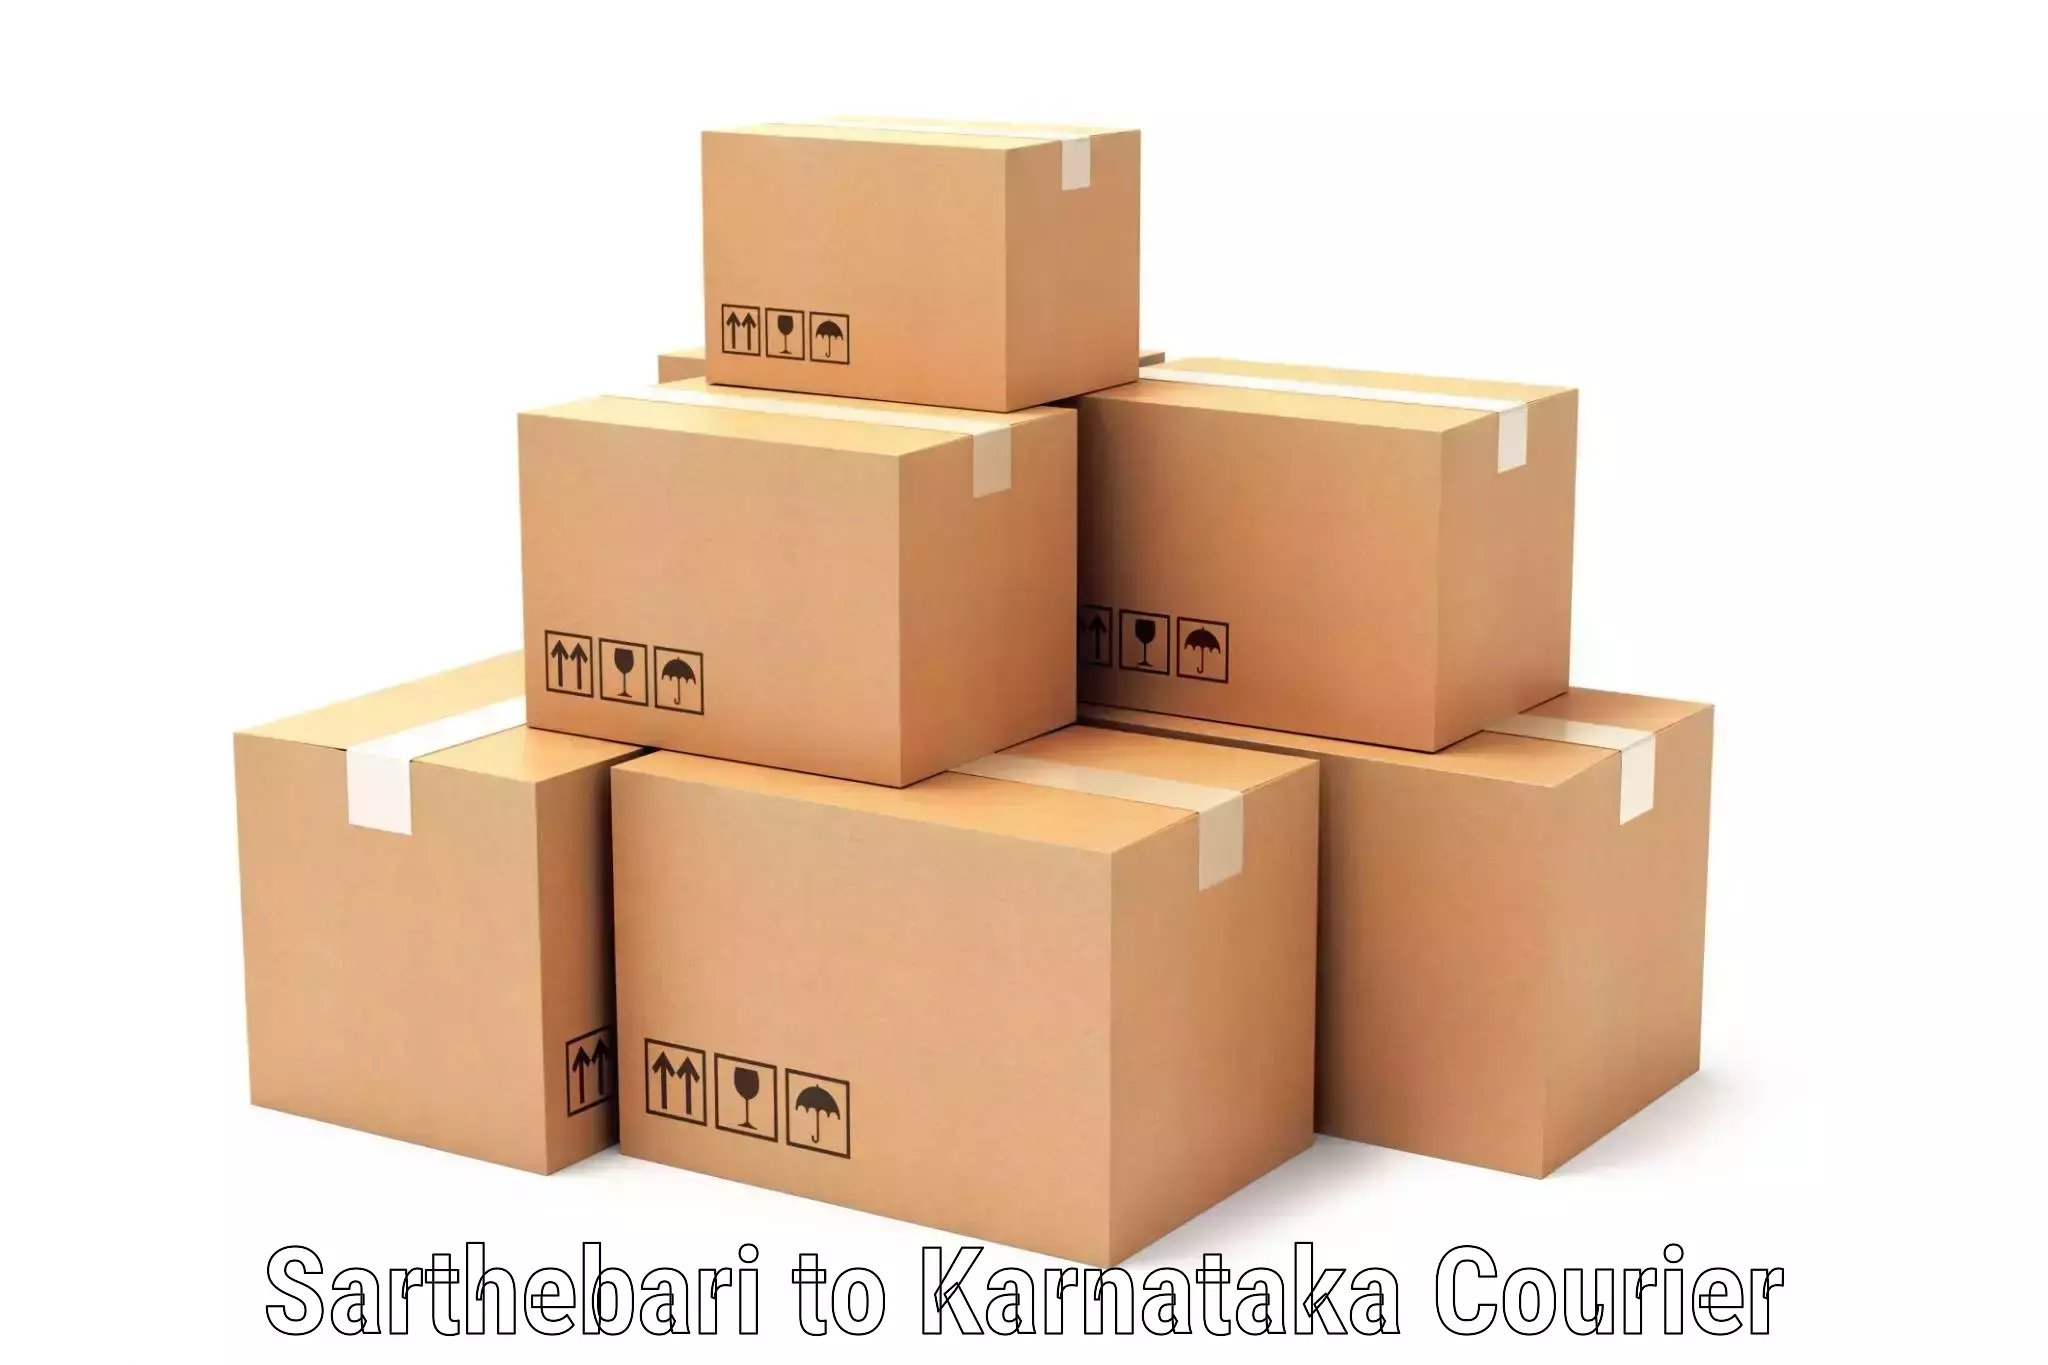 Customizable delivery plans Sarthebari to Karnataka